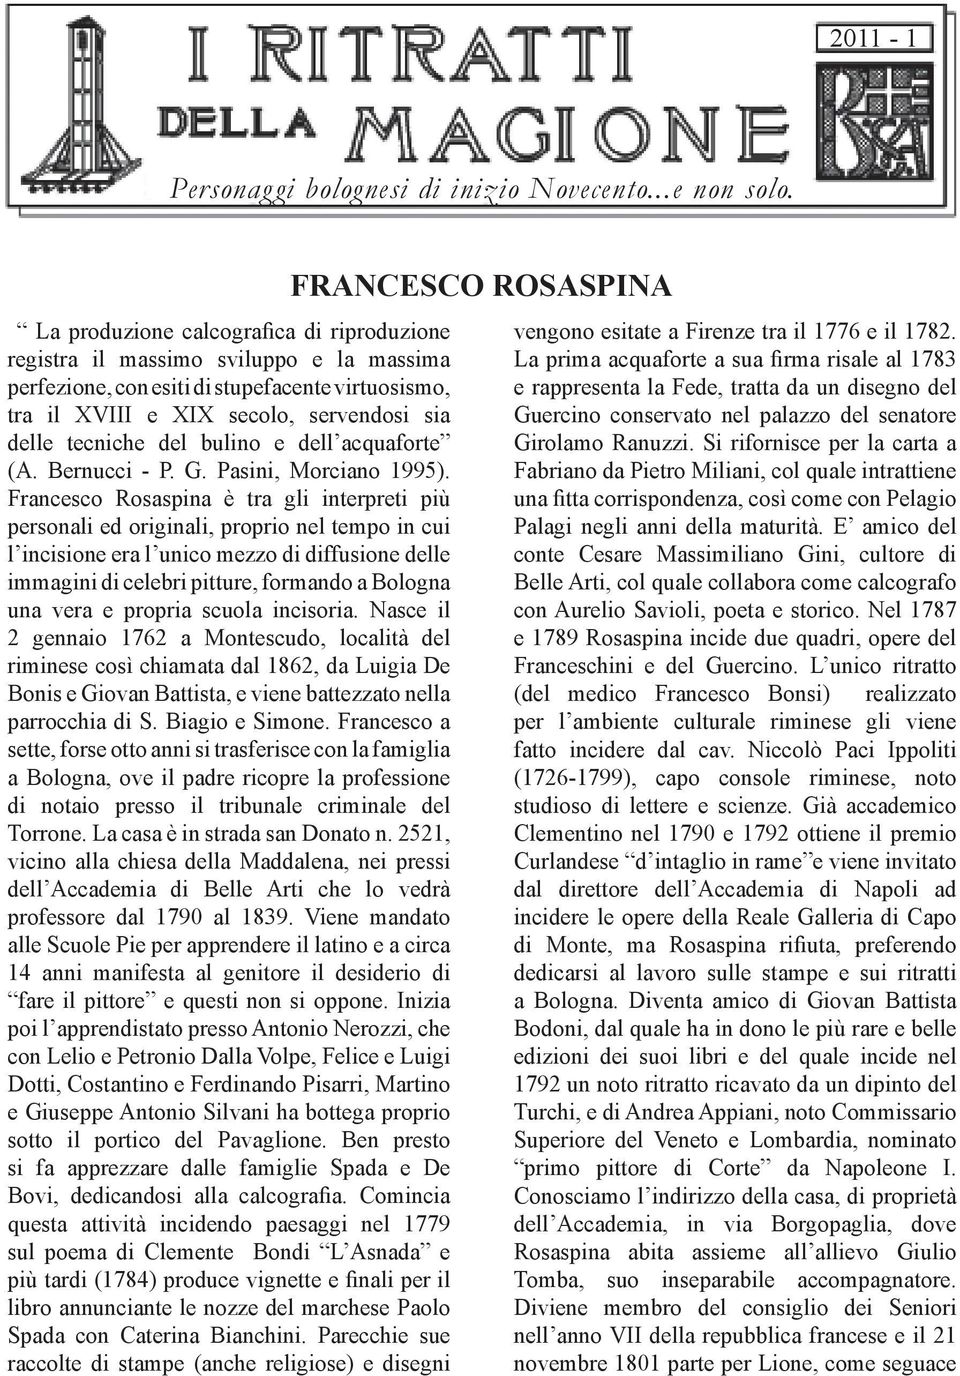 bulino e dell acquaforte (A. Bernucci - P. G. Pasini, Morciano 1995).